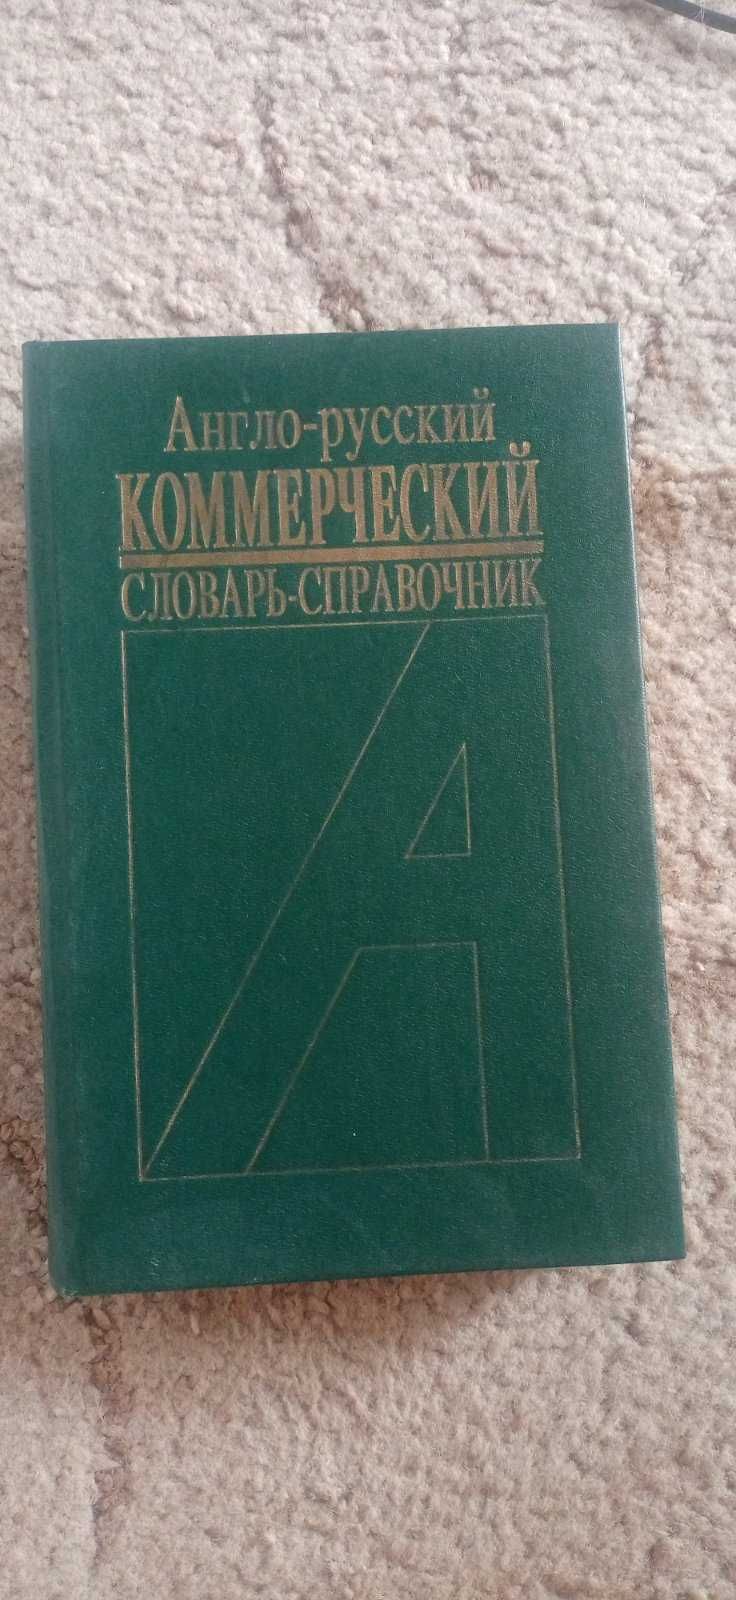 Коммерческий англо-русский словарь